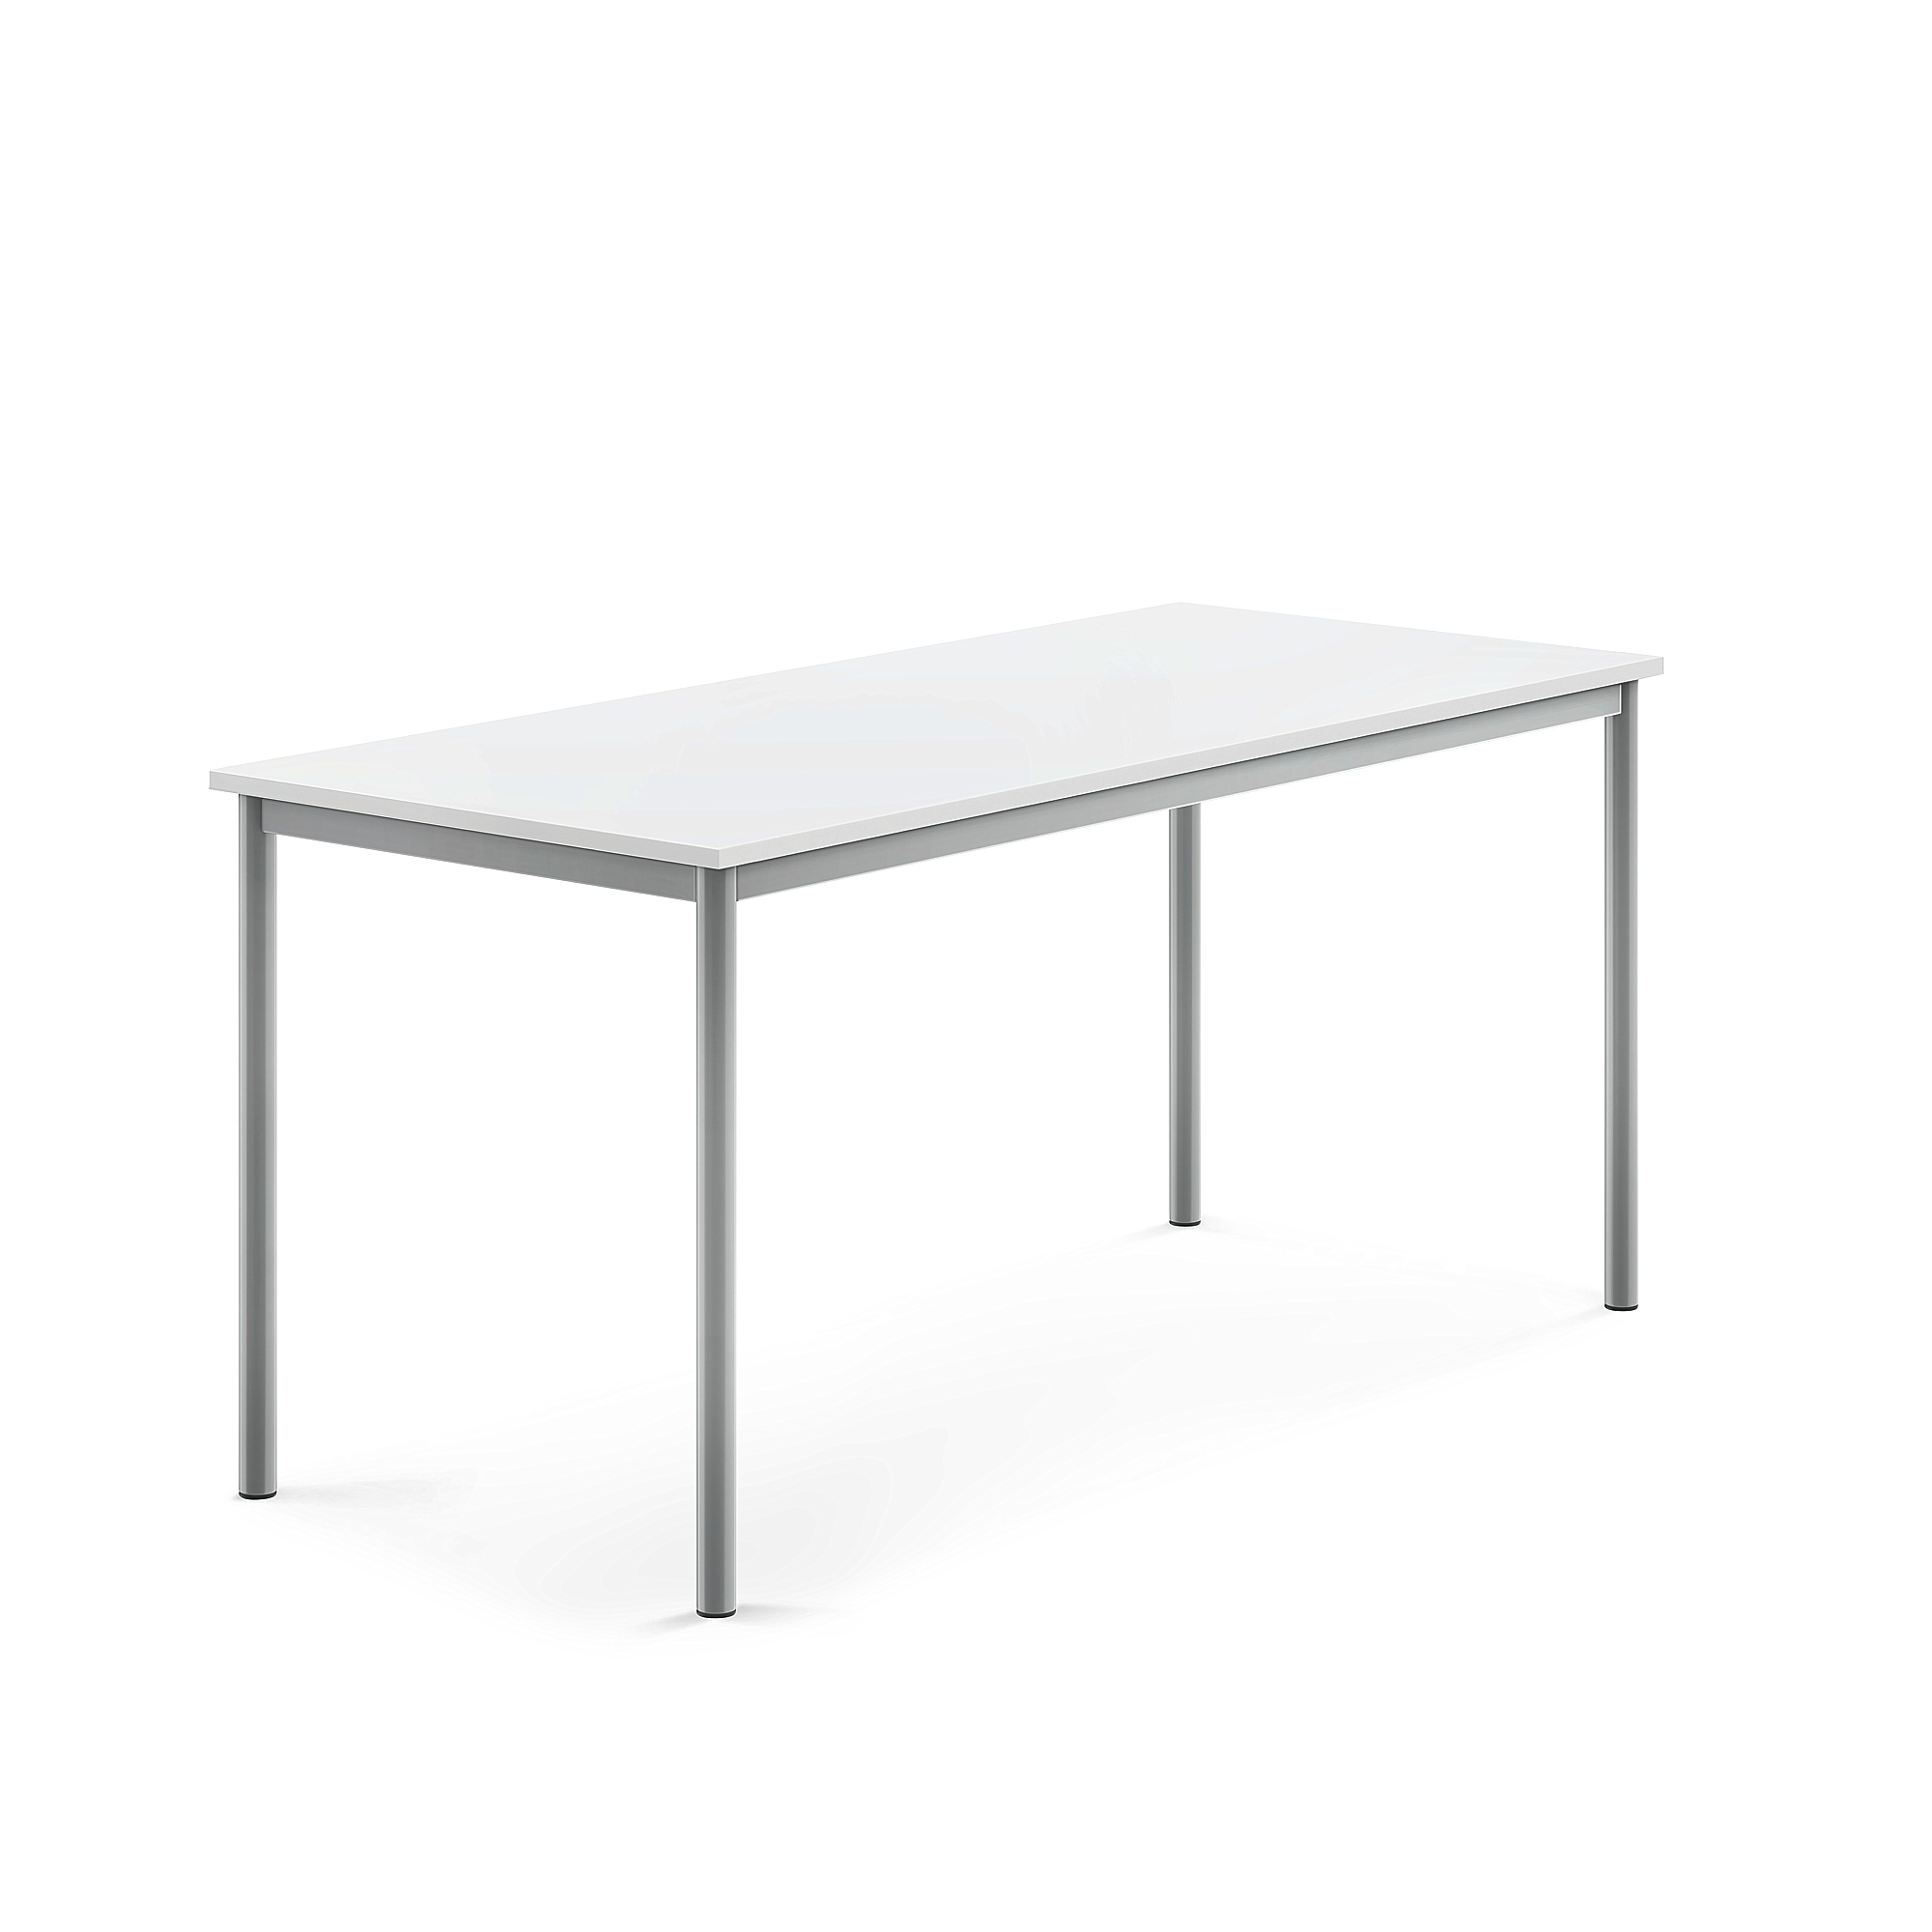 Stůl BORÅS, 1600x700x720 mm, stříbrné nohy, HPL deska, bílá